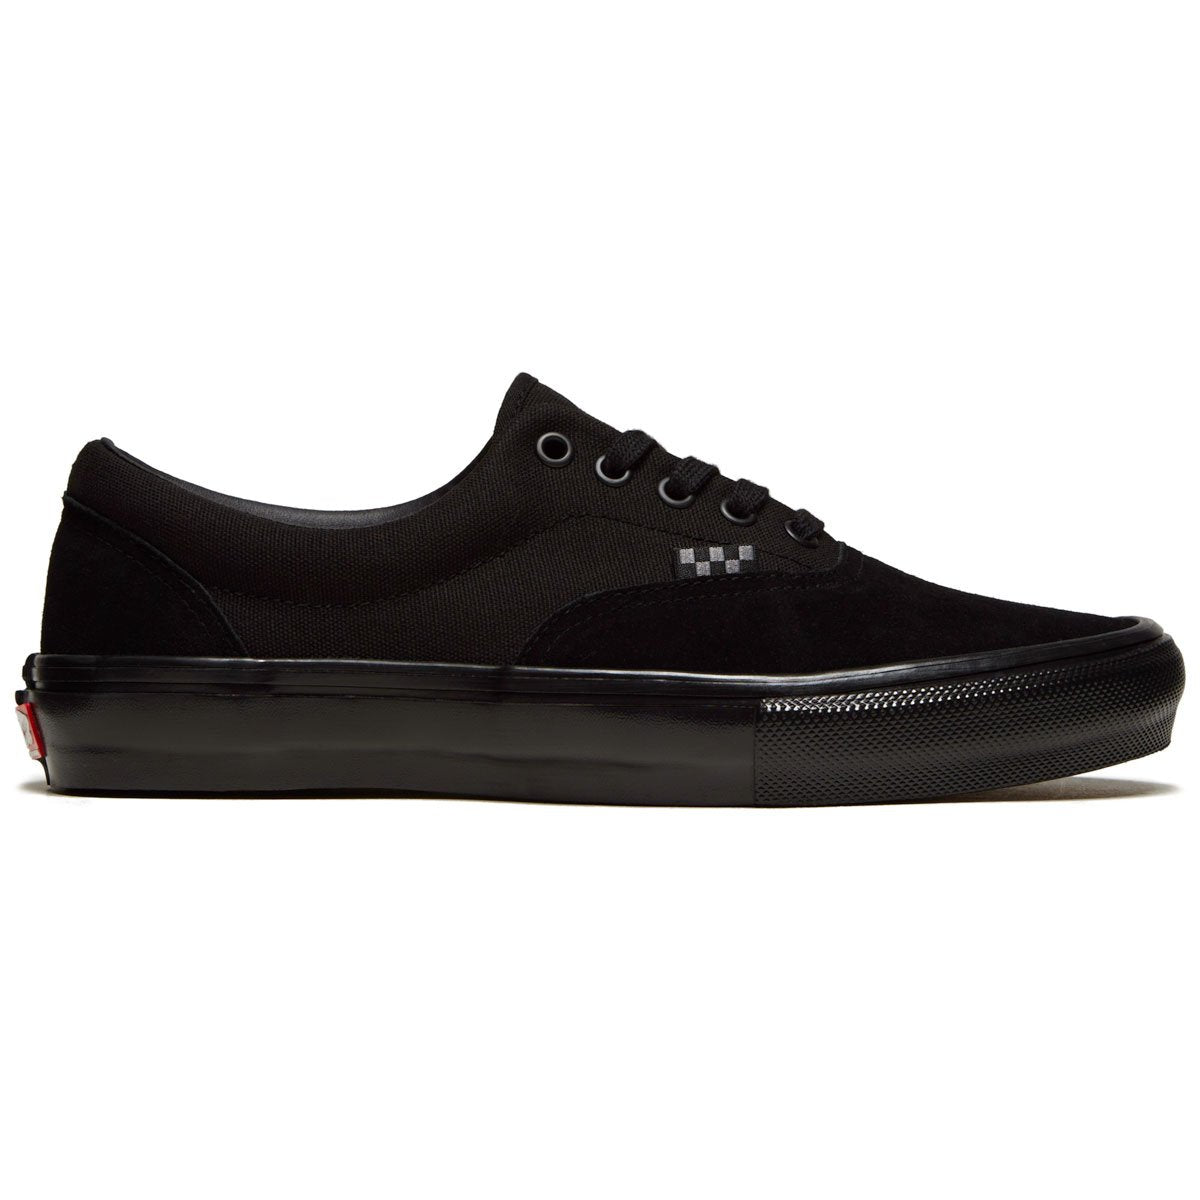 Vans Skate Era Shoes - Black/Black image 1